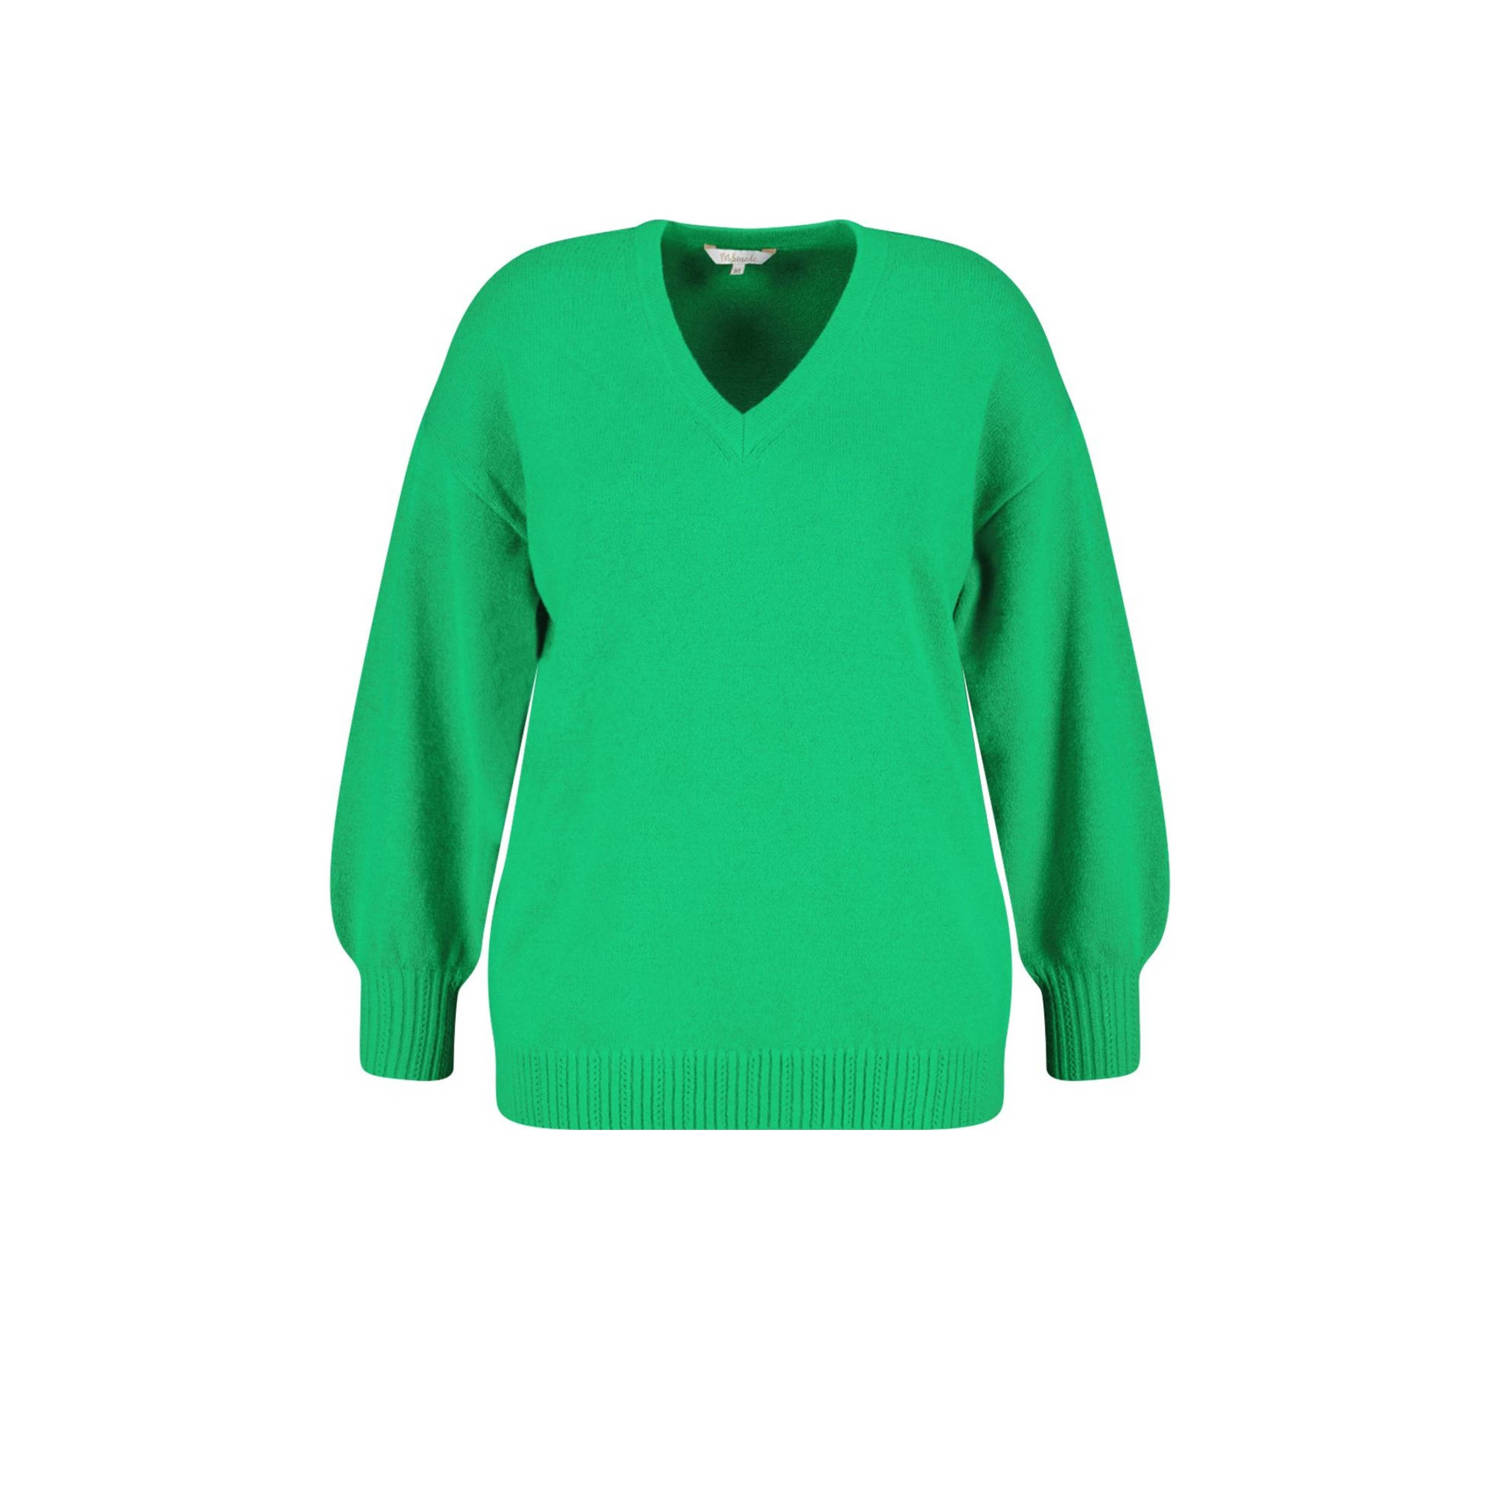 MS Mode fijngebreide trui groen